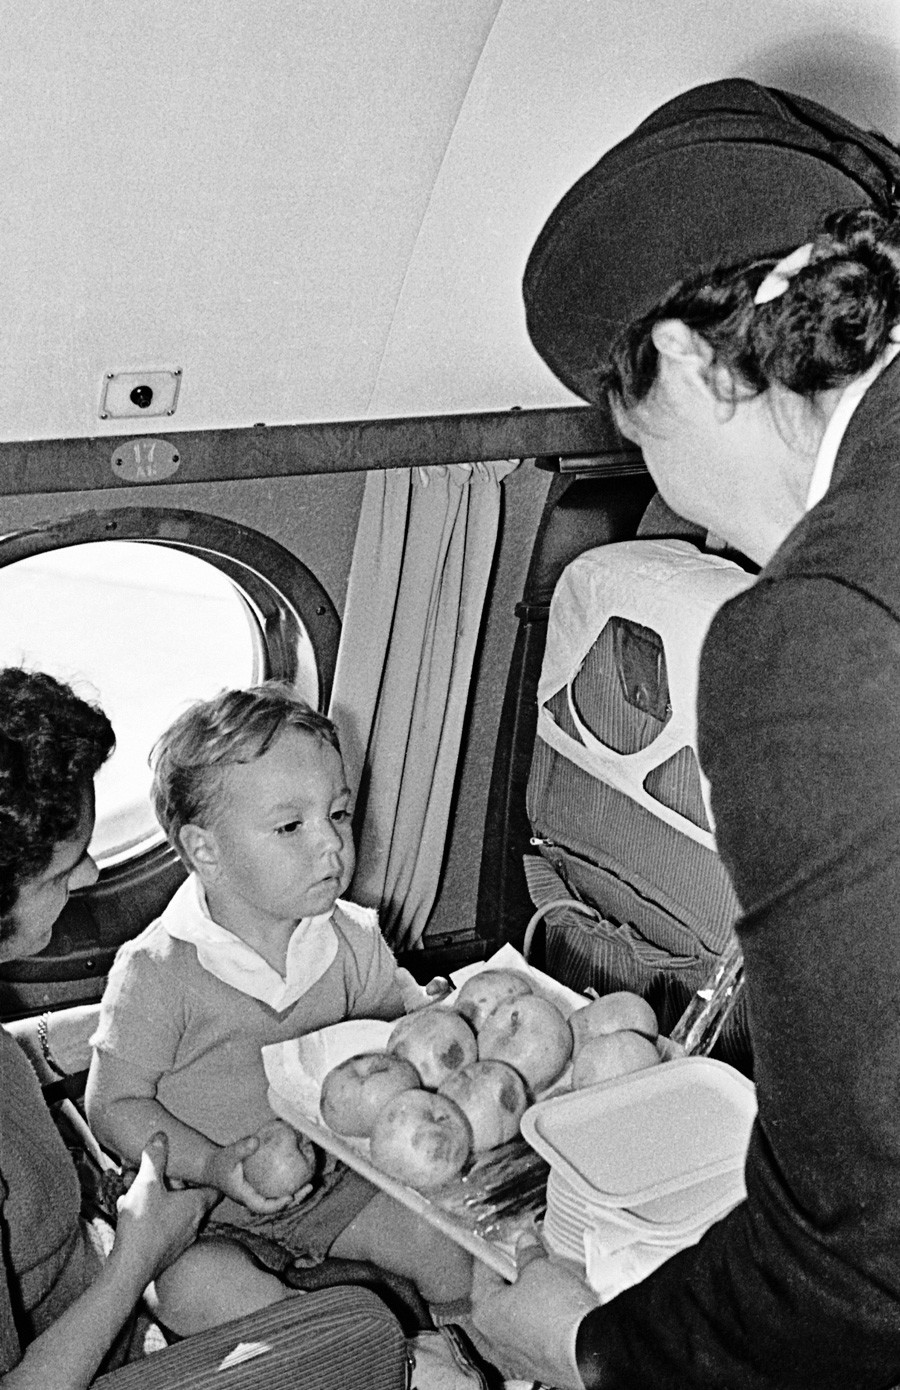 Стјуардеса опслужује путнике у авиону Ту-104 за време лета.